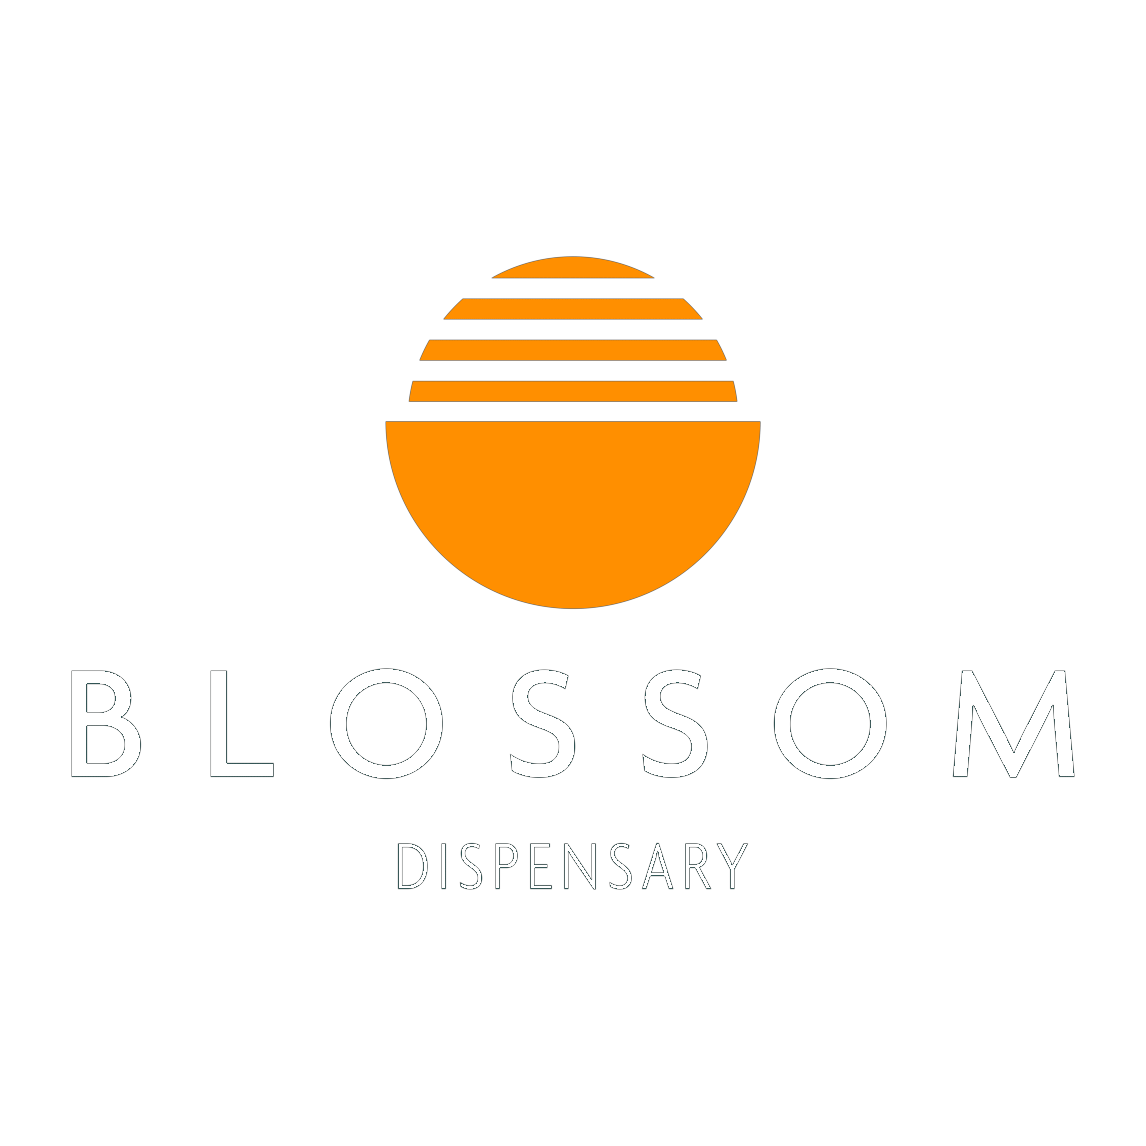 Blossom Dispensary (Temporarily Closed)